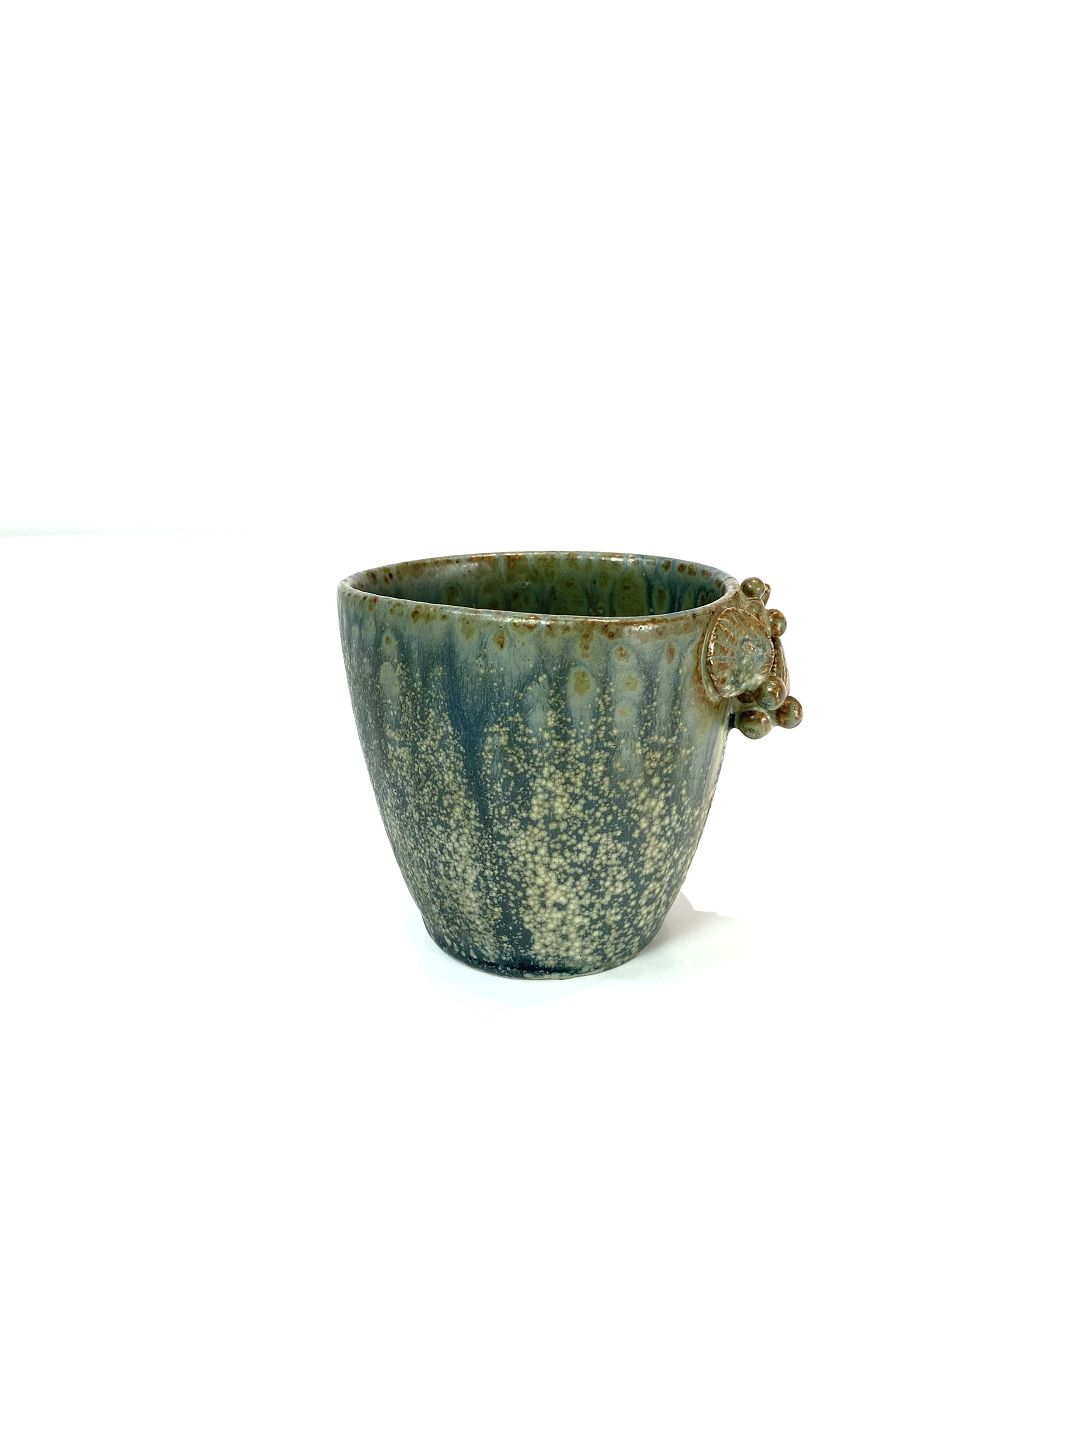 dannelse sukker Athletic Lille keramik vase med turkis glasur af Arne Bang. * 5000m2 udstilling. *  Flot s - Osted Antik & Design